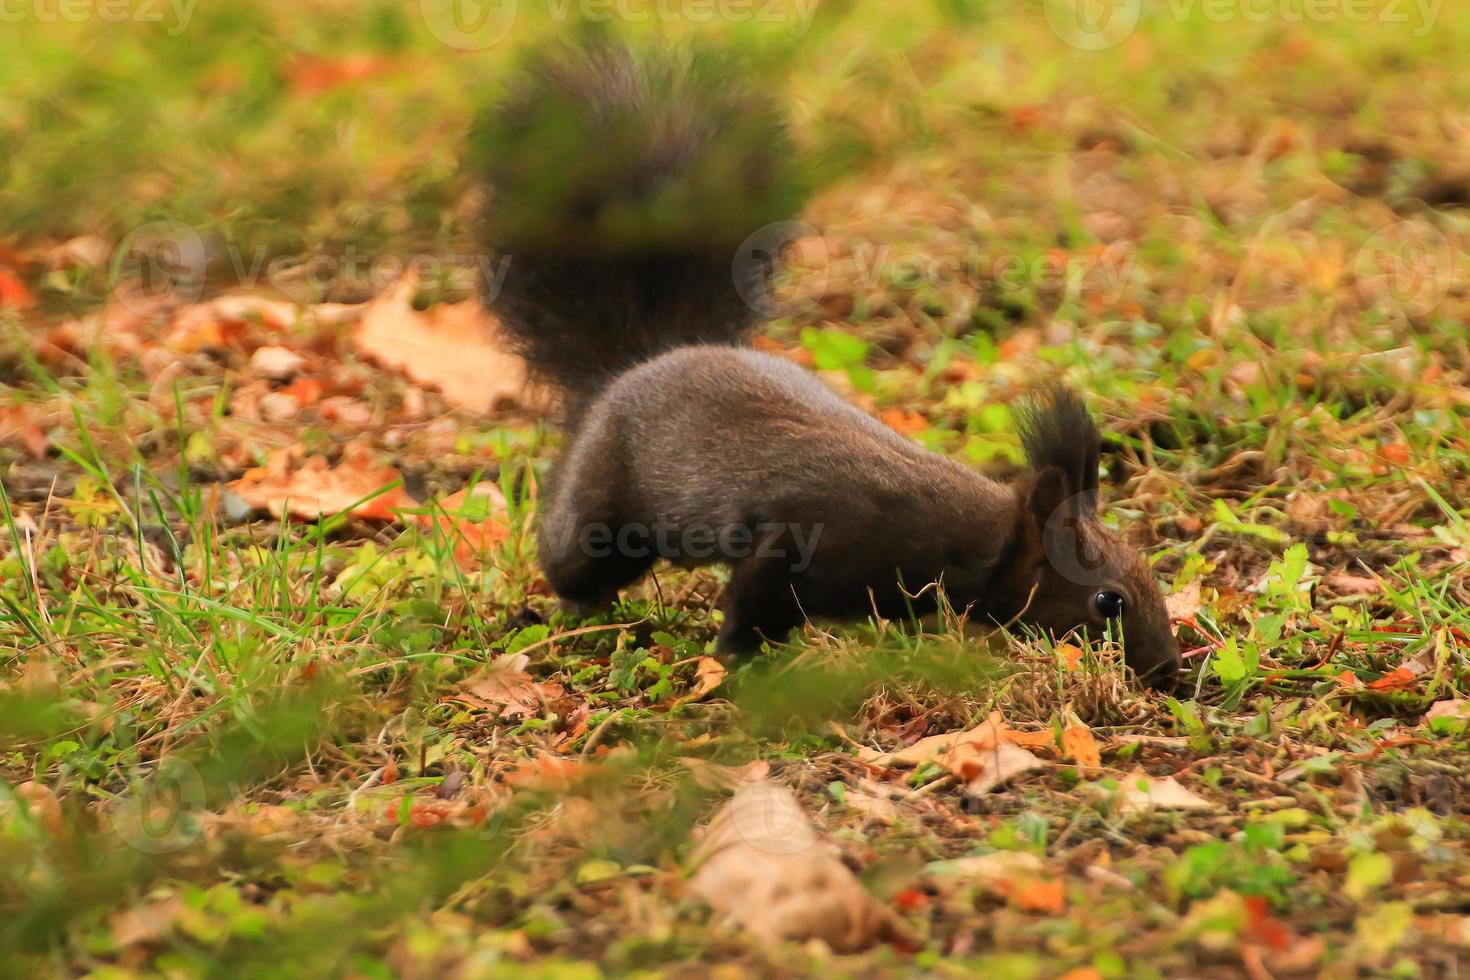 écureuil roux européen mangeant des noix dans le parc photo